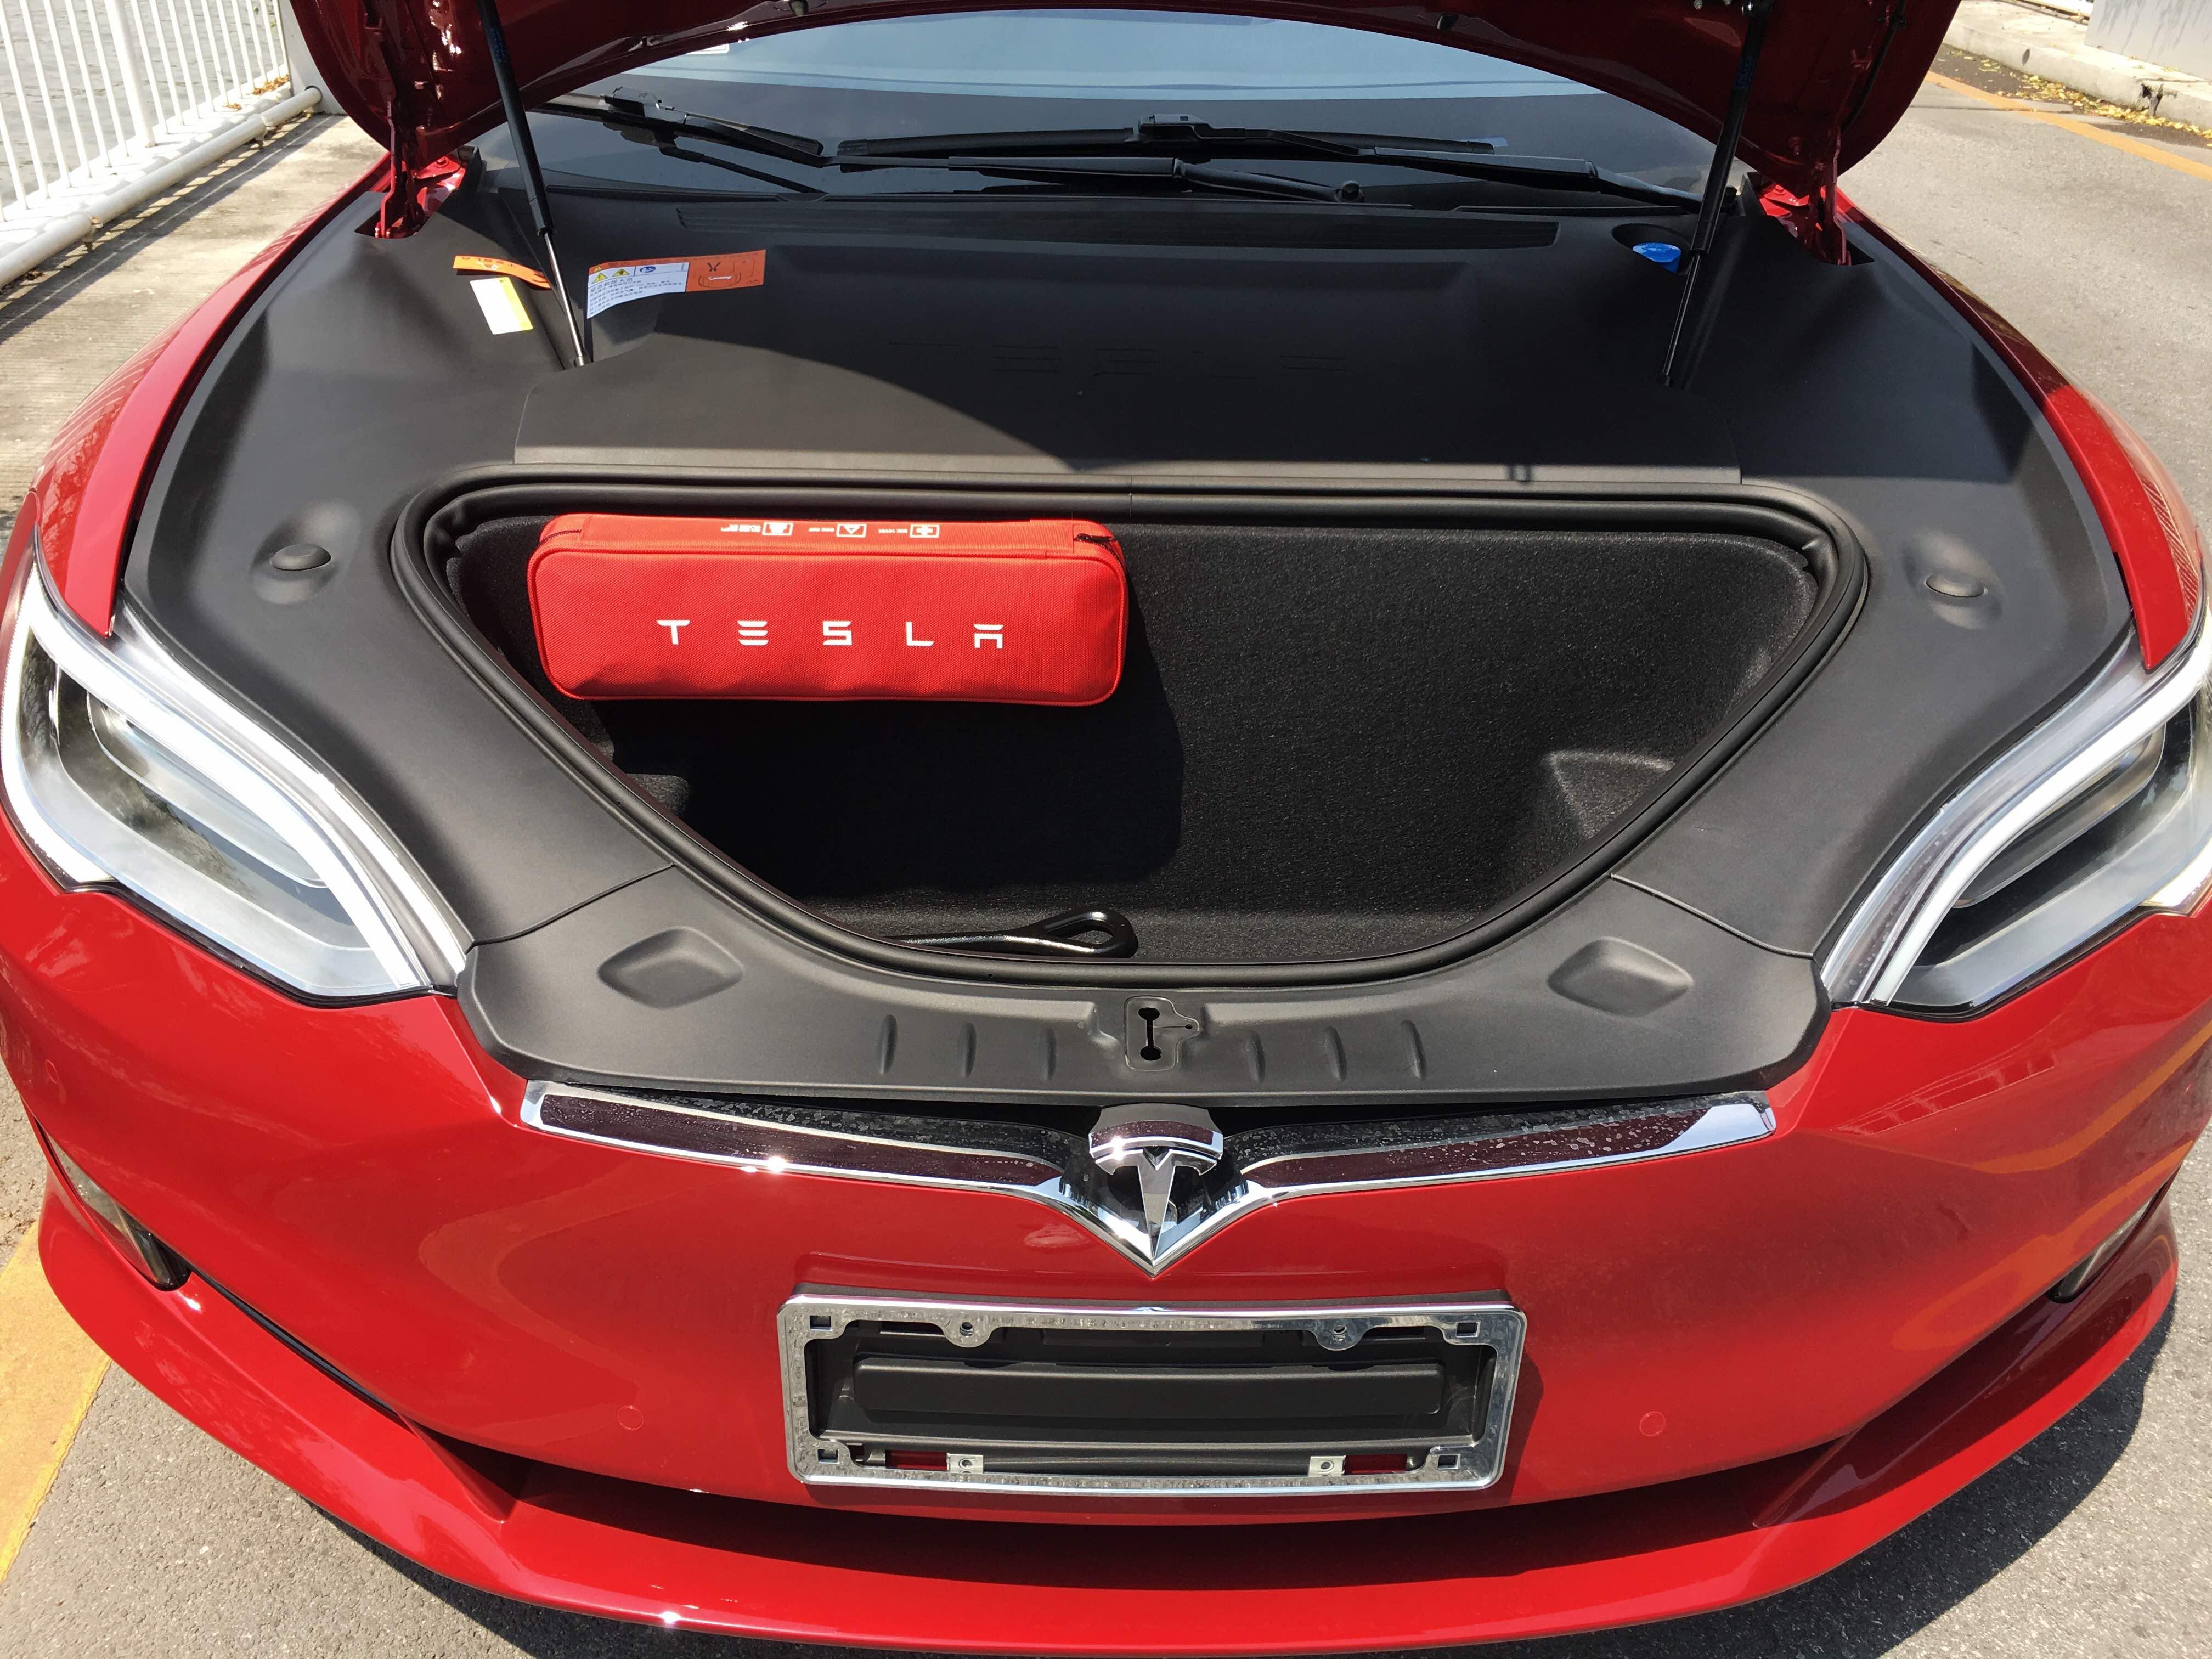 Tesla's 'Carbon-Wrapped' Motor | Antti Lehikoinen